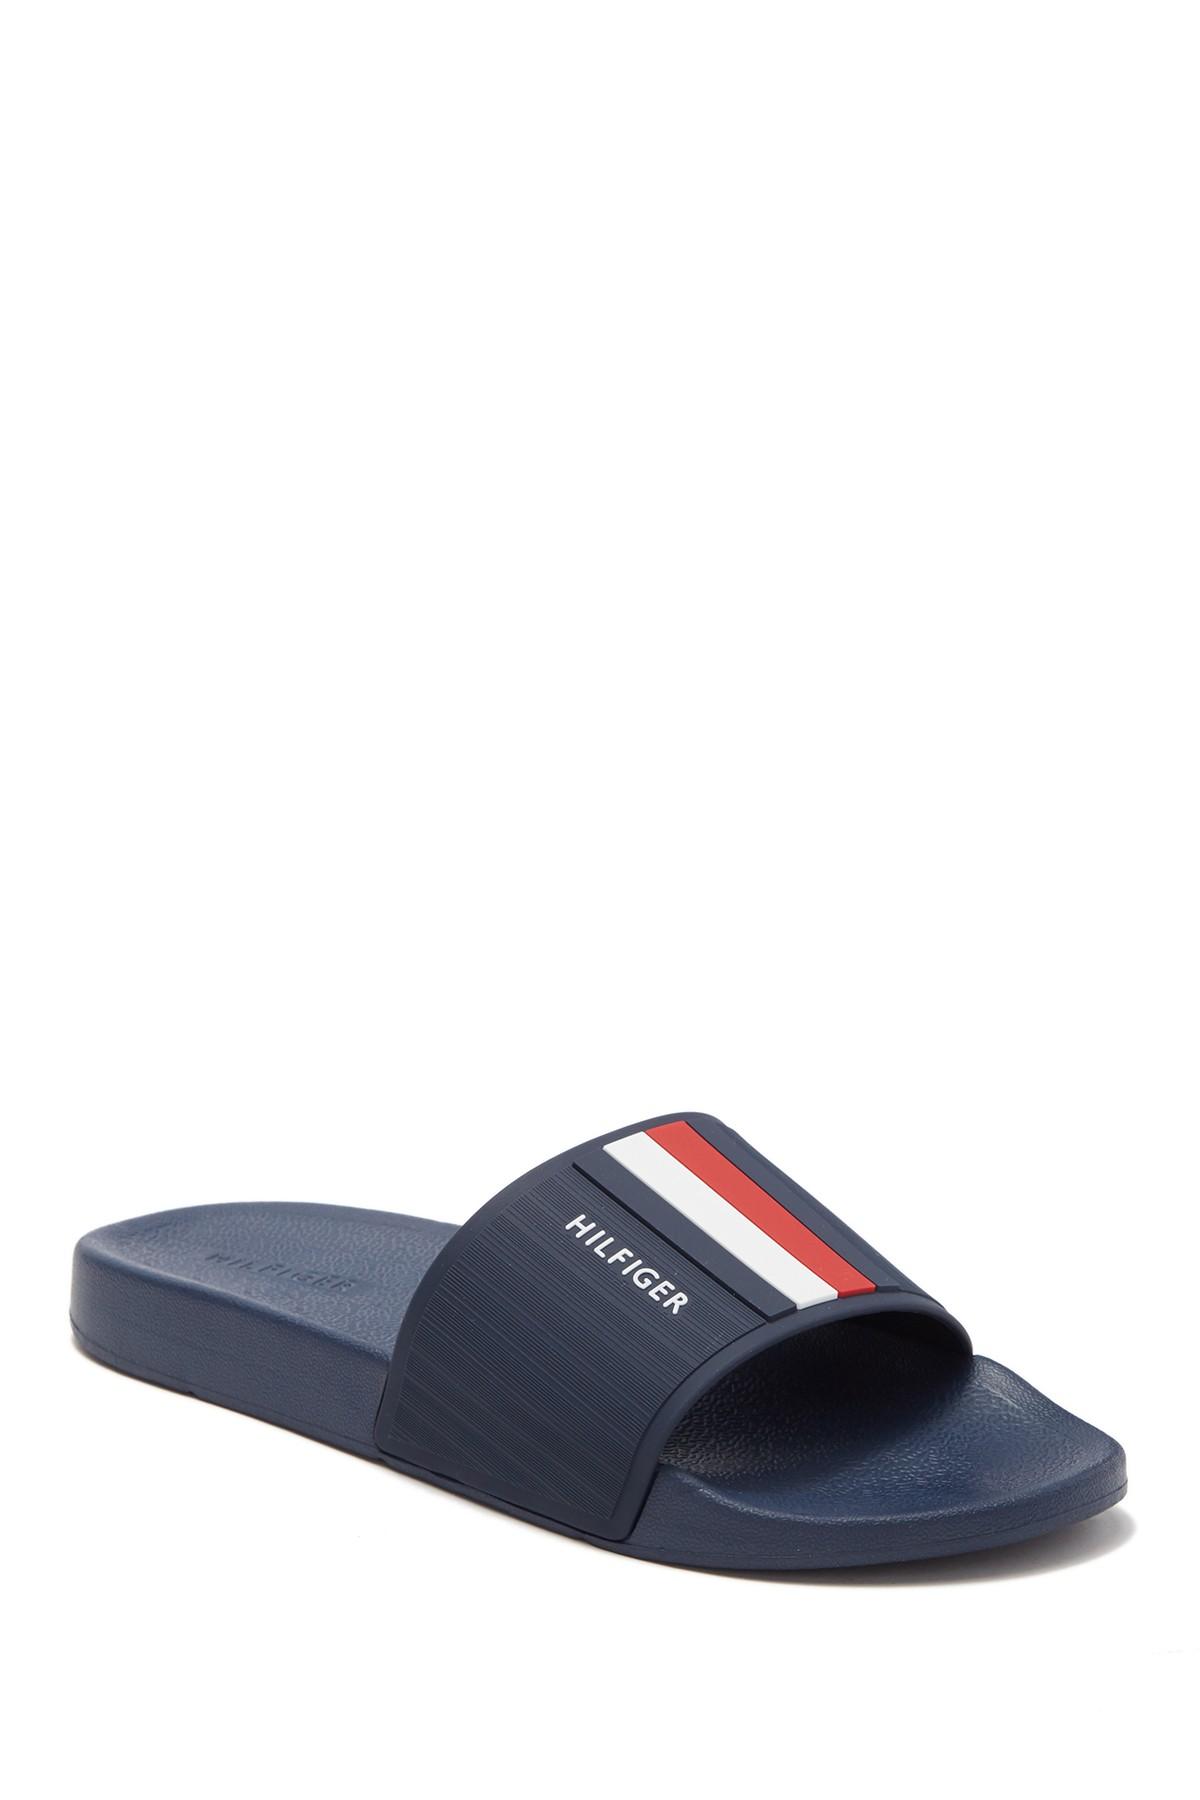 Tommy Hilfiger Eastern (dark Blue) Sandals in Blue for Men - Save 14% ...